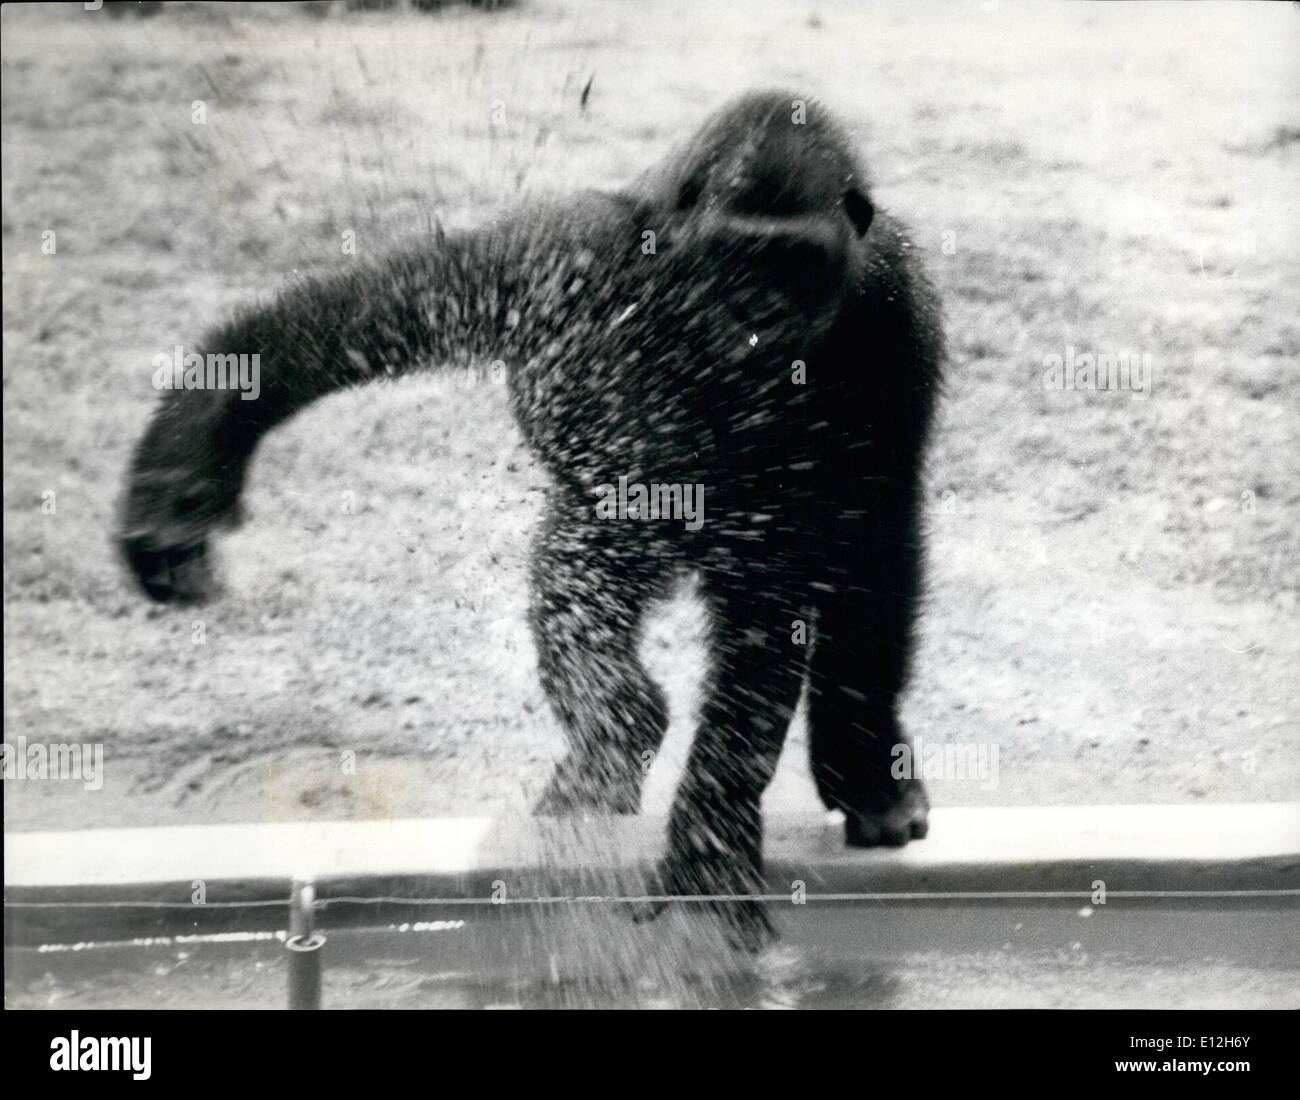 10. Januar 2012 - Gorilla Affen seine Hüter - und lernt schwimmen: Wasserspiel ist nicht etwas, die Gorillas zu genießen, in der Tat haben eine Eversion darauf Aruna, ein 7 Jahre alten Gorilla im Zoo von Nigerias Ibadan, ist eine Ausnahme von der Norm - sie liebt das Wasser, und lernt schwimmen durch Kopieren der Bewegungen von ihrem Halter. Aruna und ihr Partner verhindern indem man aus ihrer Tiefe ertrinken, wurde das Wassergraben der Gorilla-Verbindung mit einem elektrischen Zaun und Unterwasser Schienen vorgesehen. Stockfoto